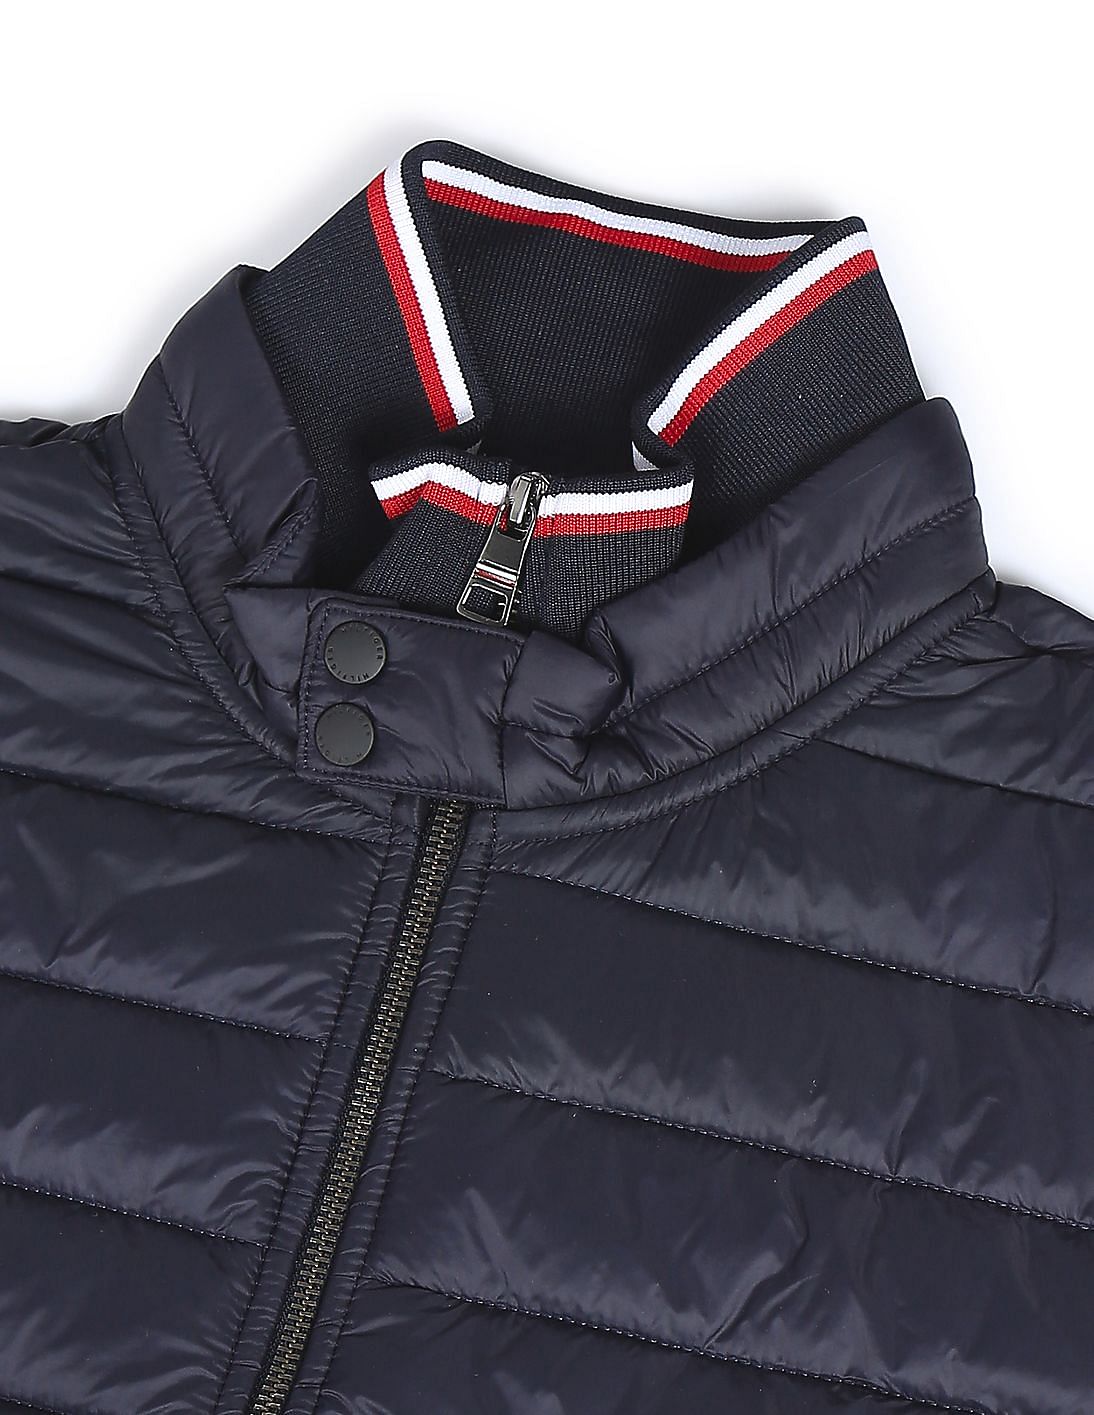 Tommy Hilfiger Mix Media Collar Jacket Desert Sky - Terraces Menswear